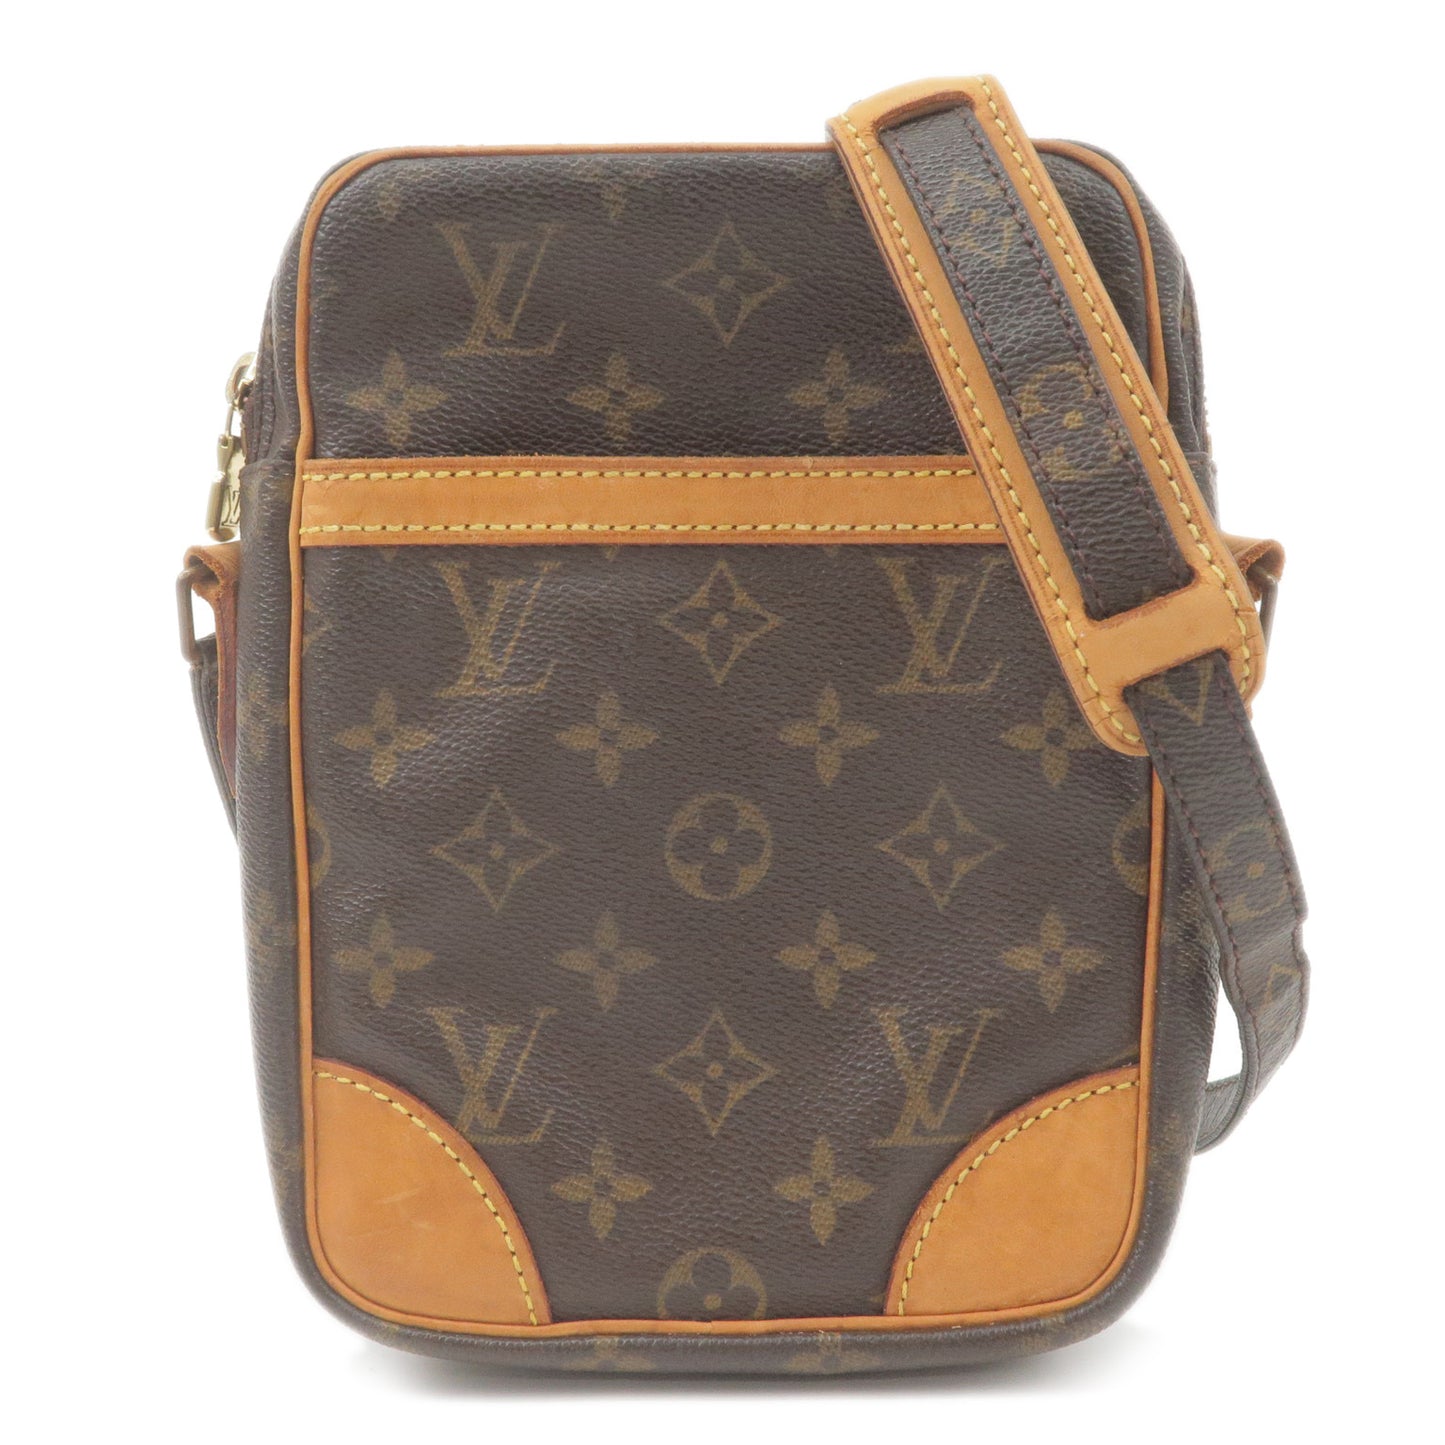 LOUIS VUITTON Louis Vuitton Danube GM Monogram M45262 Shoulder Bag